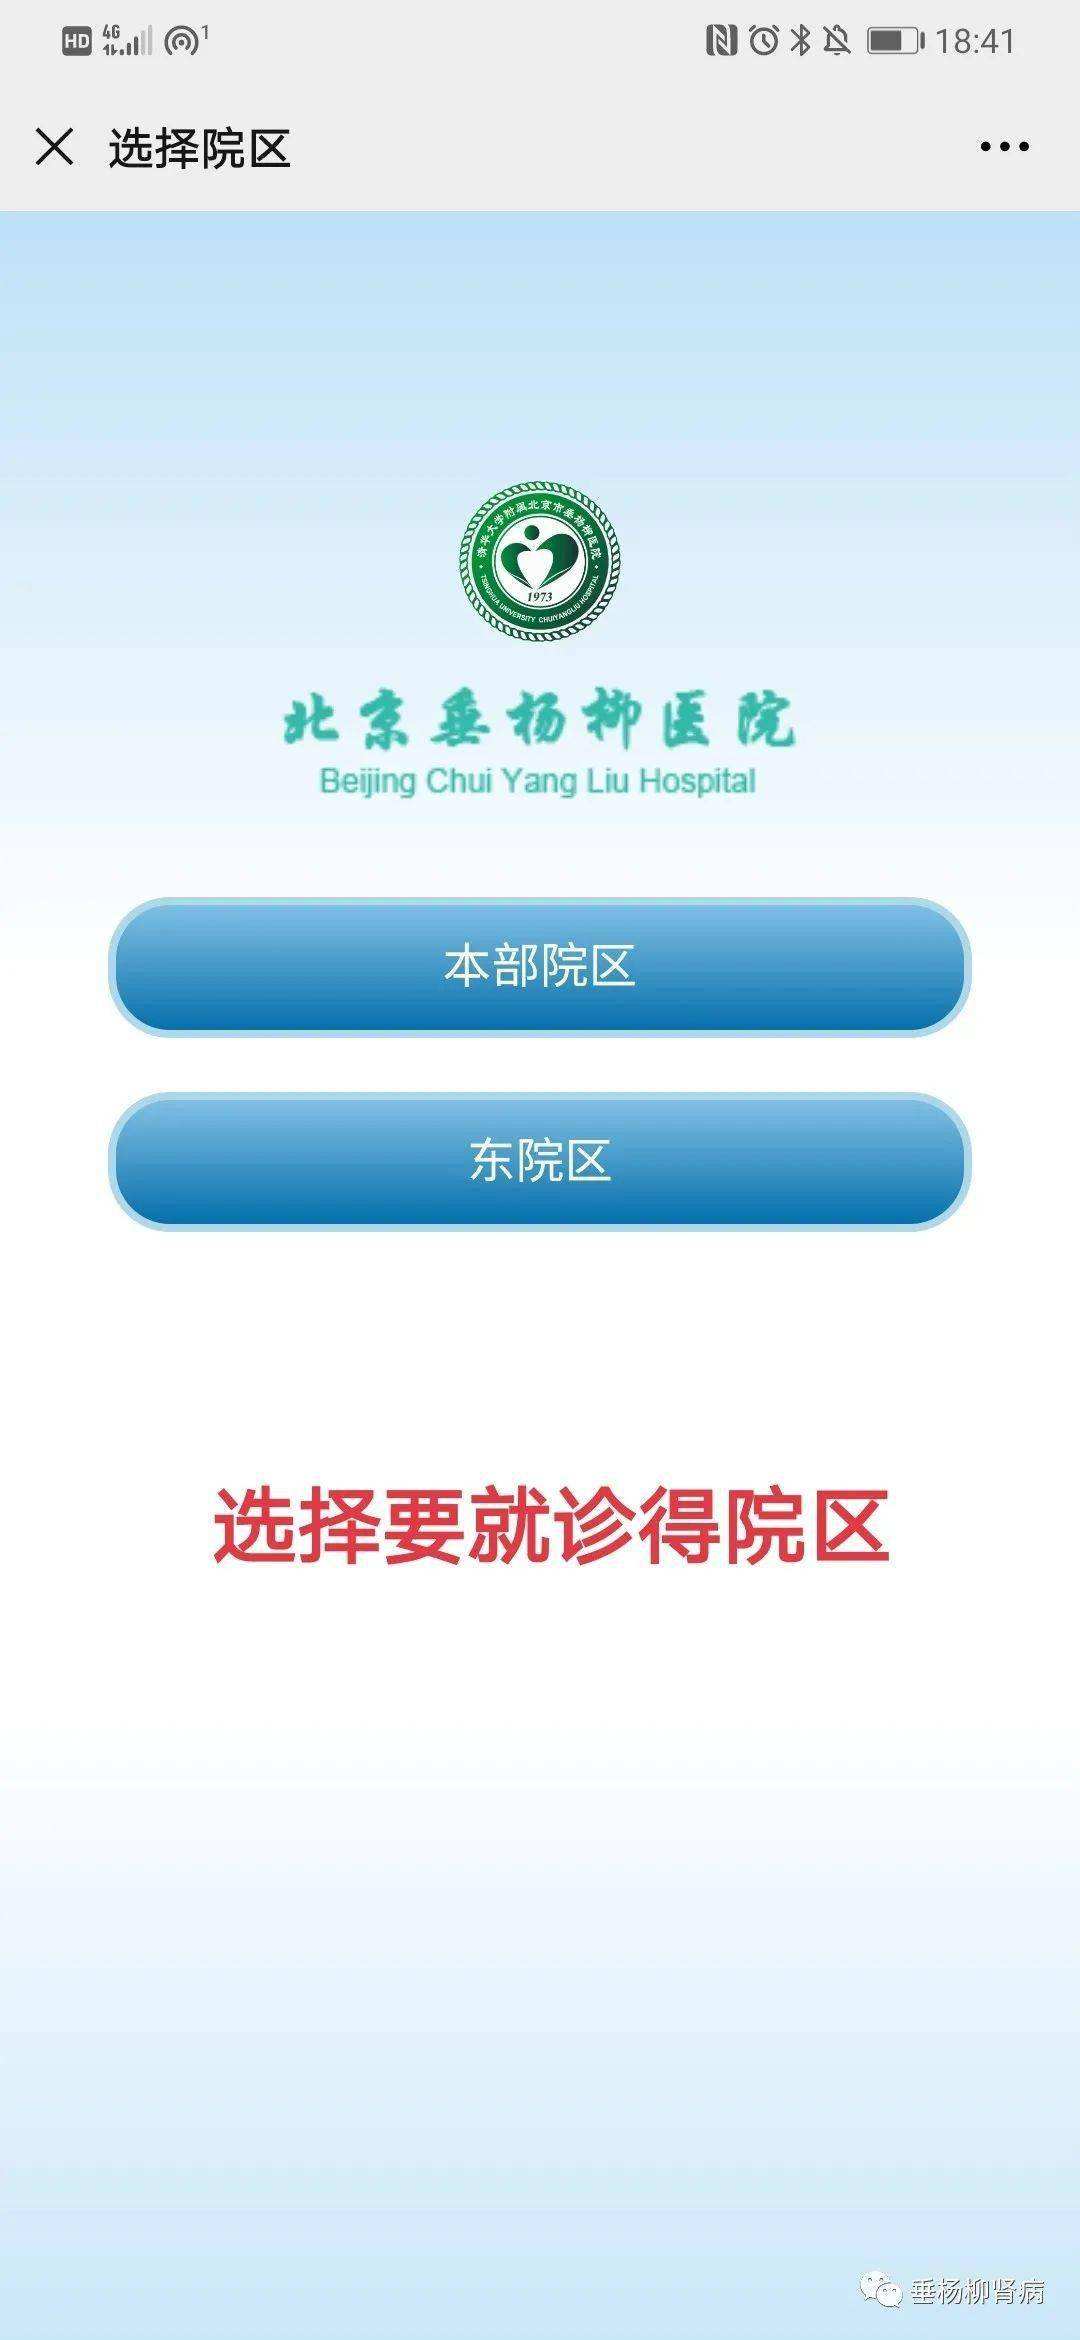 北京电力医院贩子挂号,确实能挂到号!联系方式专业快速的简单介绍